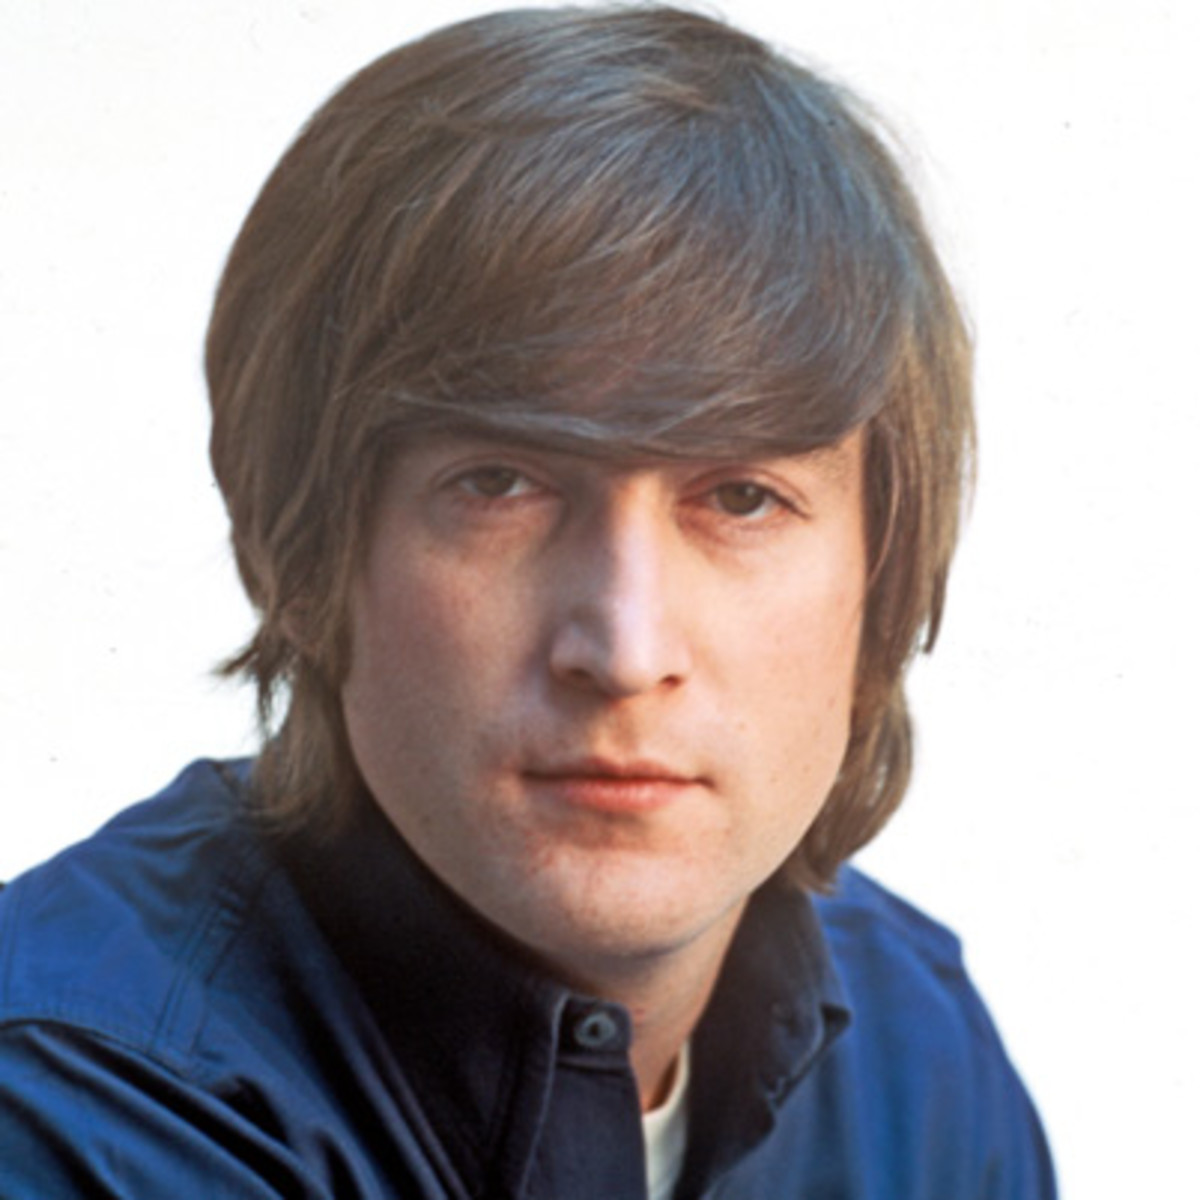 John Lennon Backgrounds on Wallpapers Vista